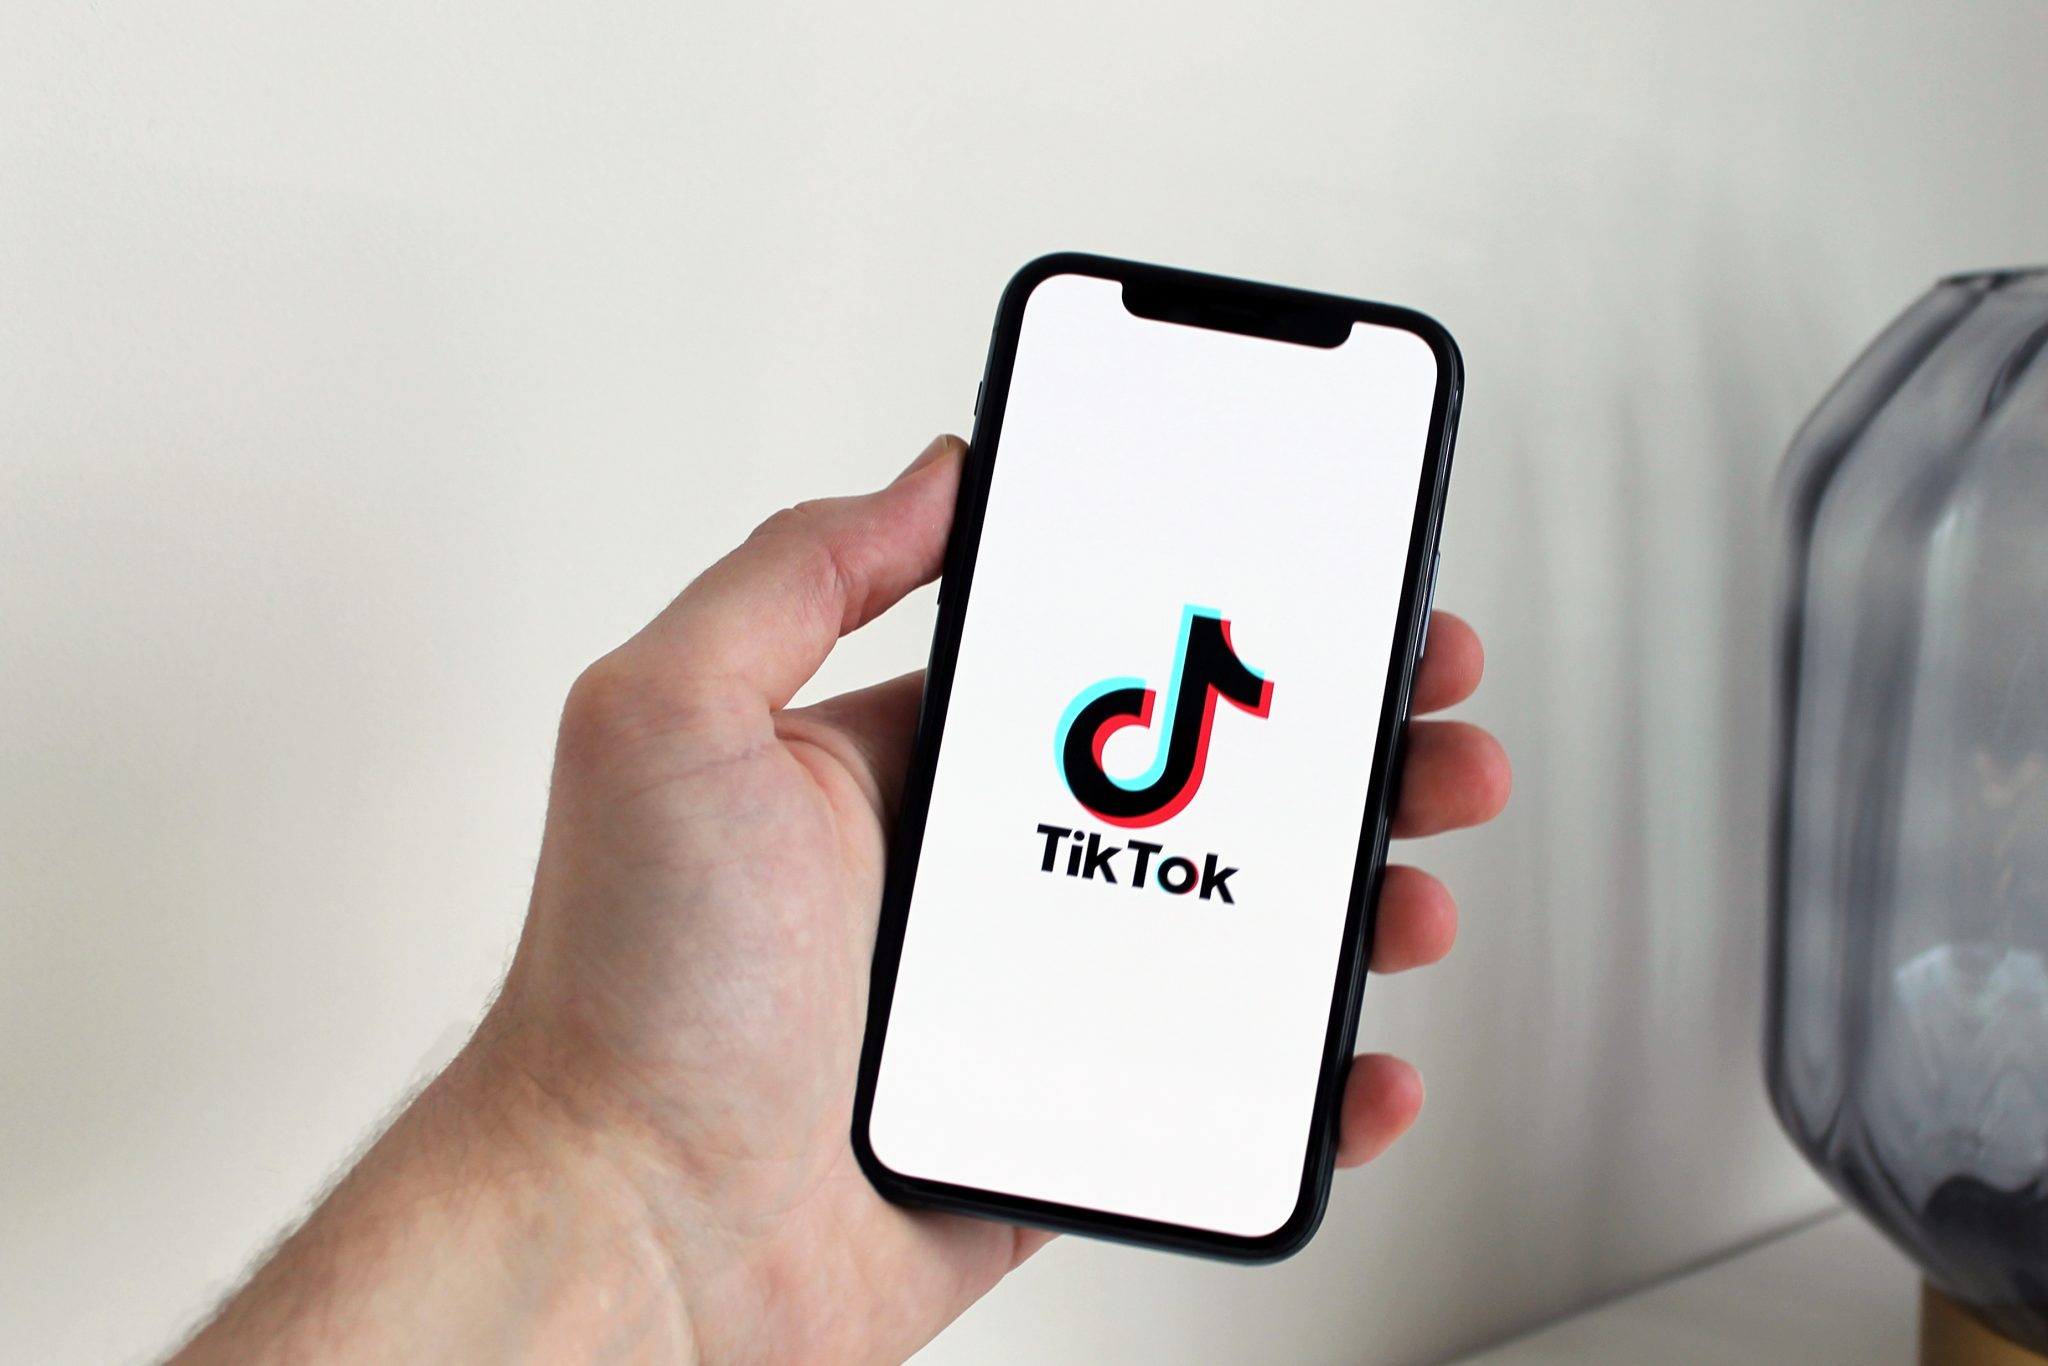 Image of phone with TikTok logo